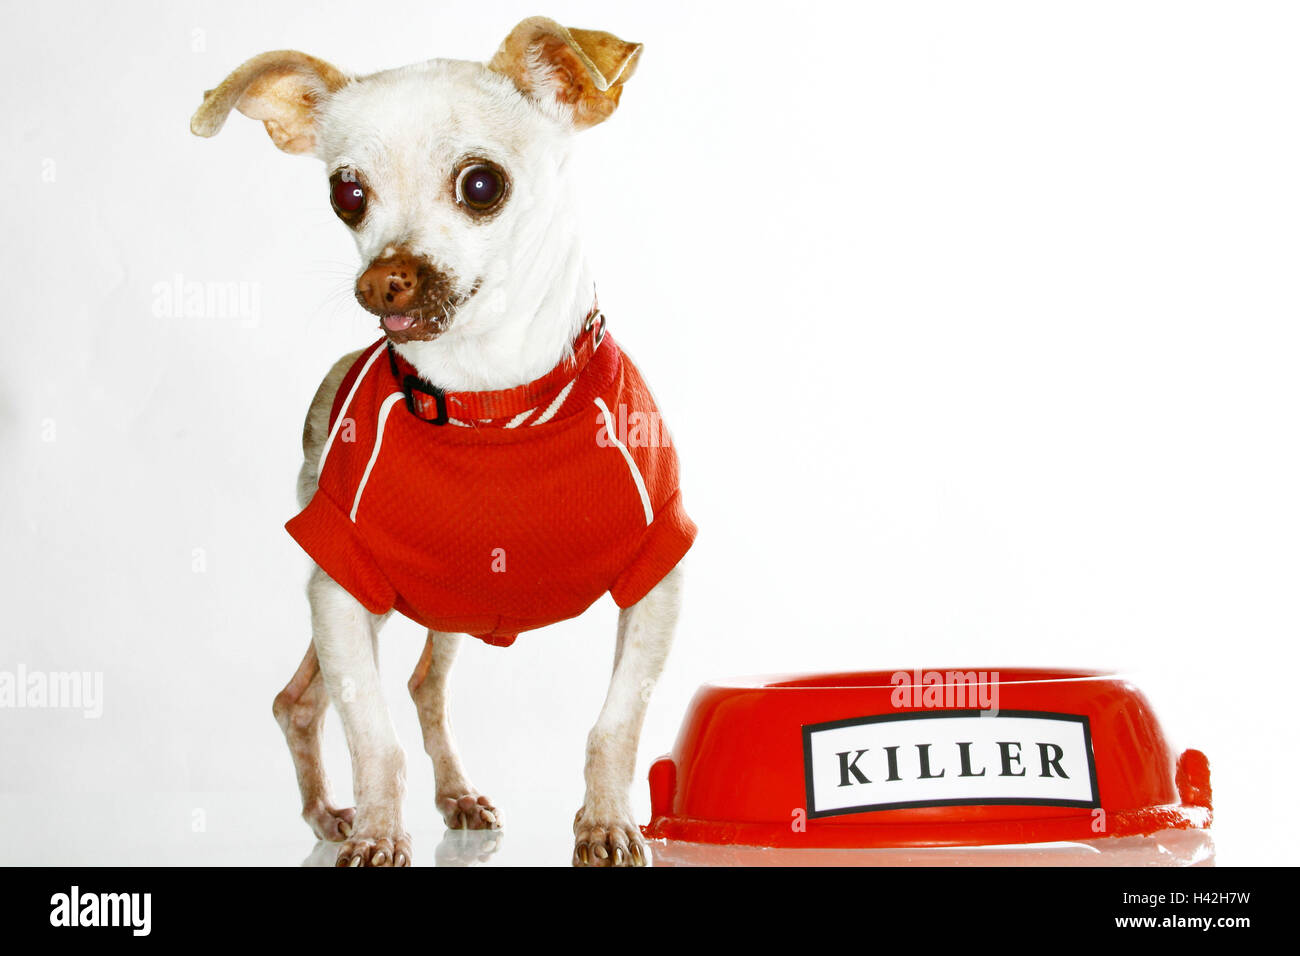 Chihuahua, Shirt, Hund Porringer, Label "Killer" Haustier, Schoßhund, kleiner Hund, Rassehund, Hund, klein, ängstlich, süß, Hund, Hundebekleidung, wenig Shirt, Pullover, Hund Schäferhund, Mode, kleine Hund Shirt lustig, witzig, paradoxerweise, humor in den Bildern Stockfoto